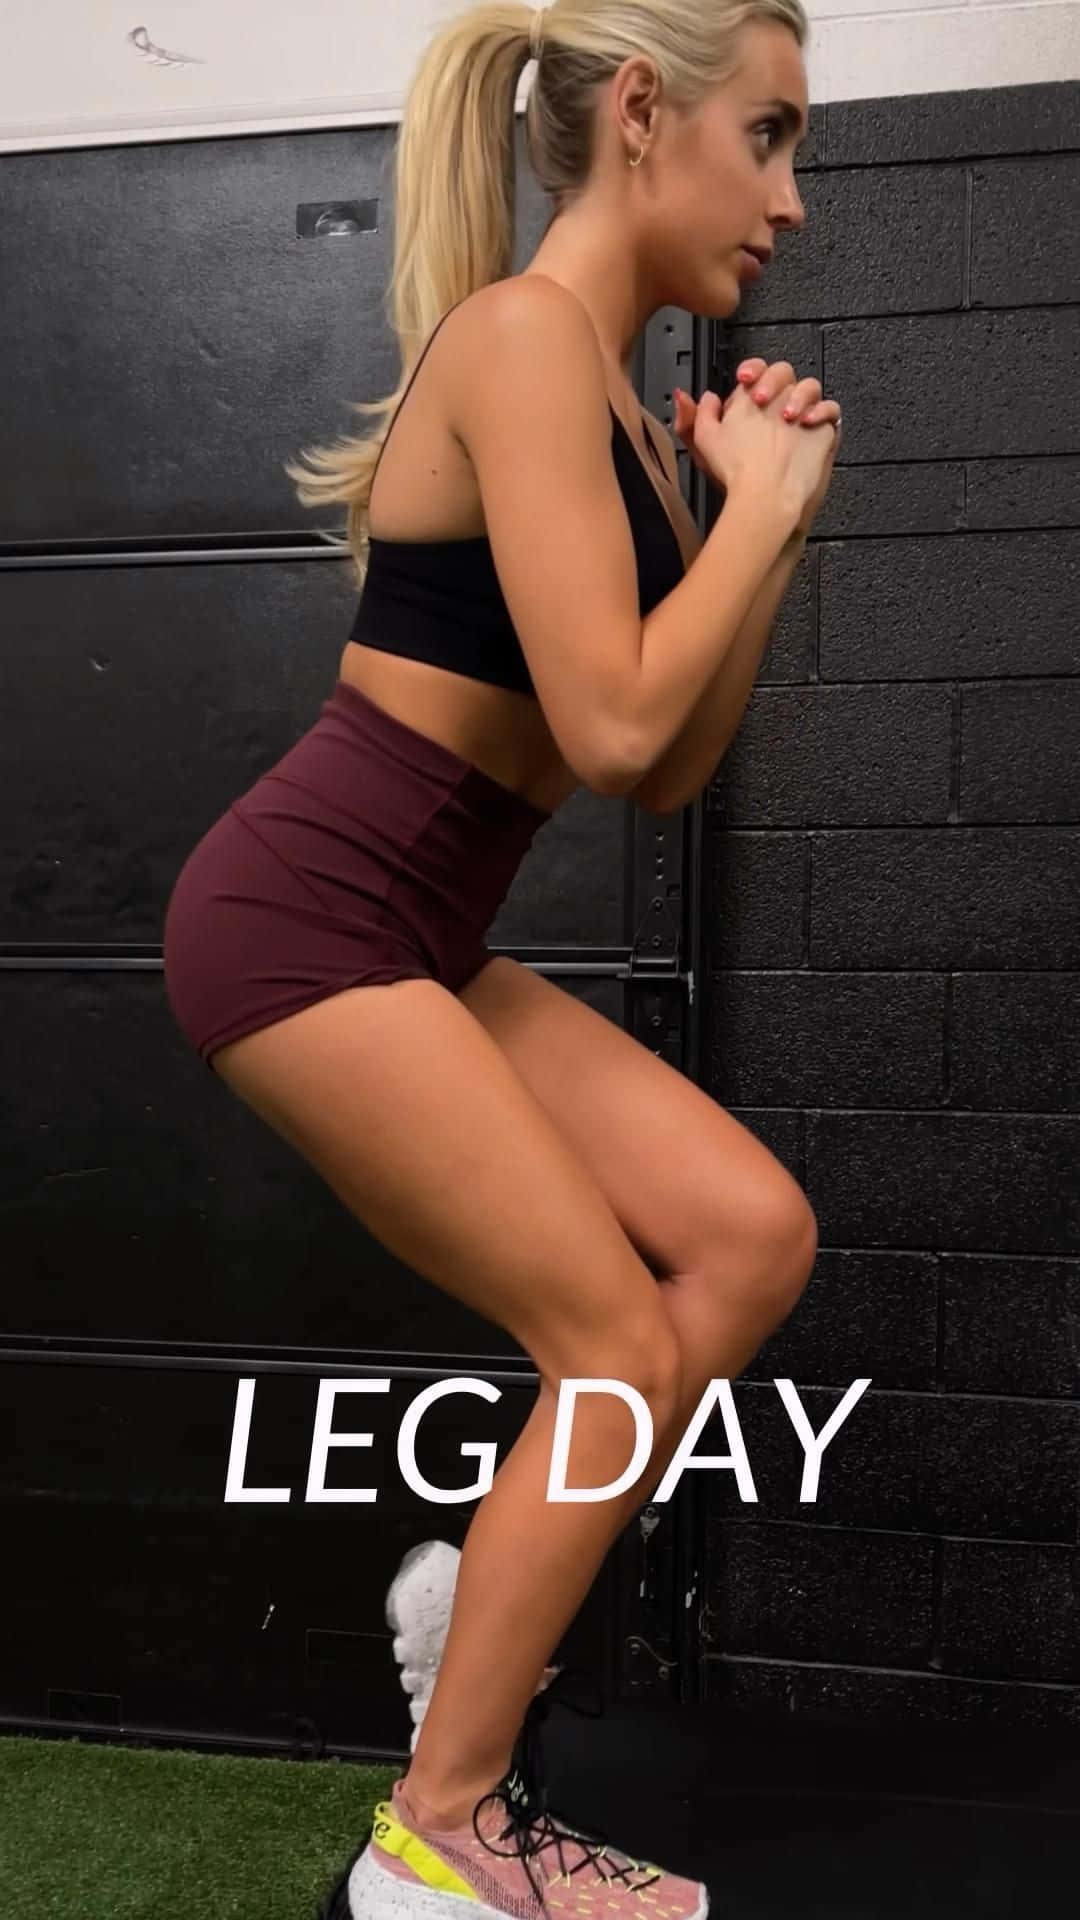 Leg Day Workout Wallpaper